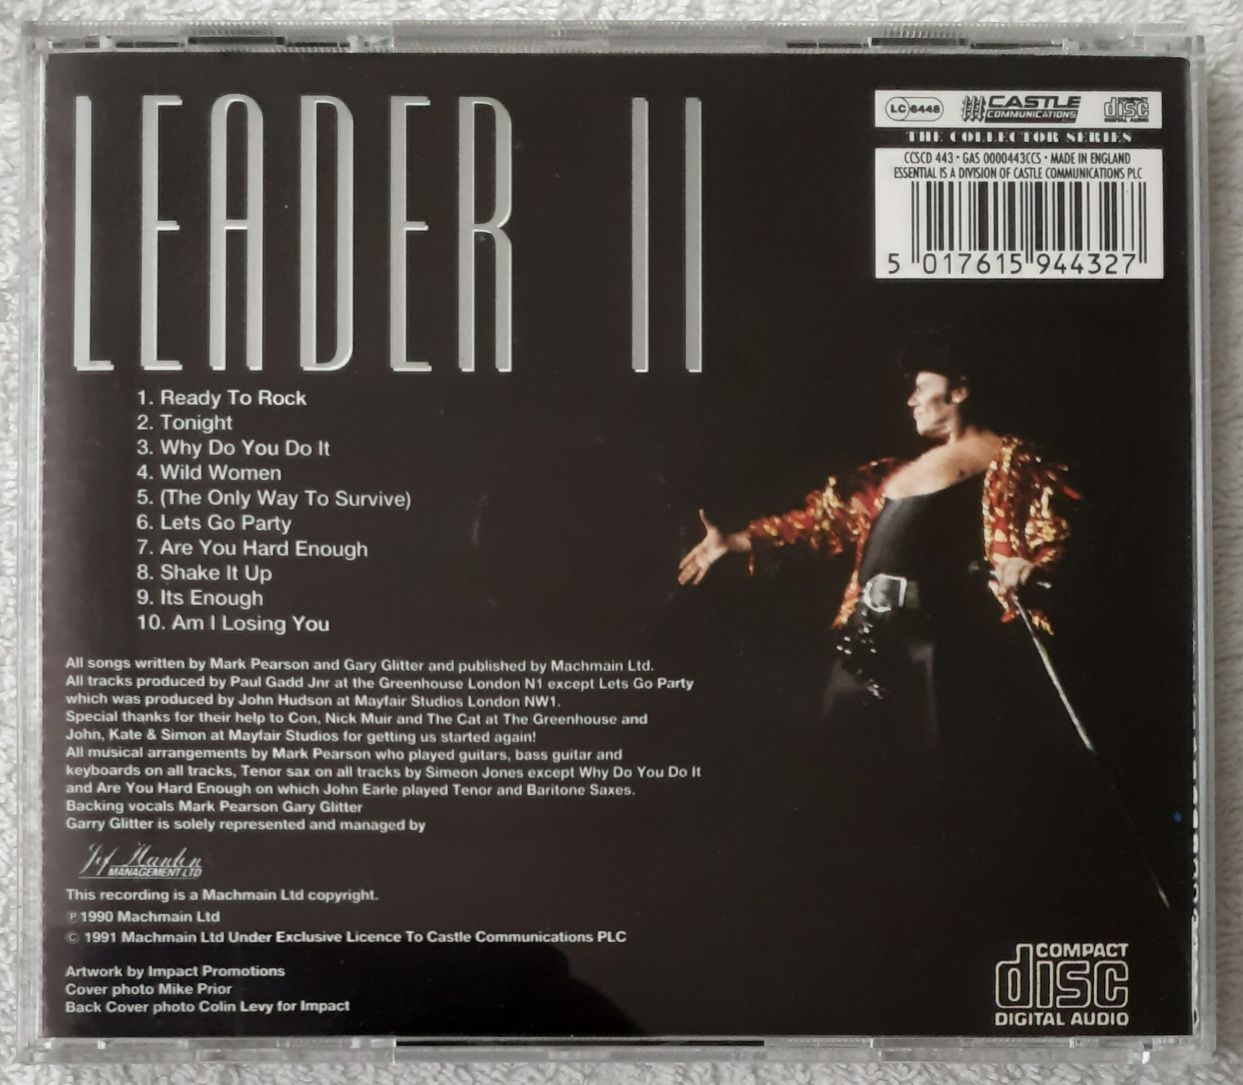 Gary Glitter ‎– Leader II (CD, Reissue)